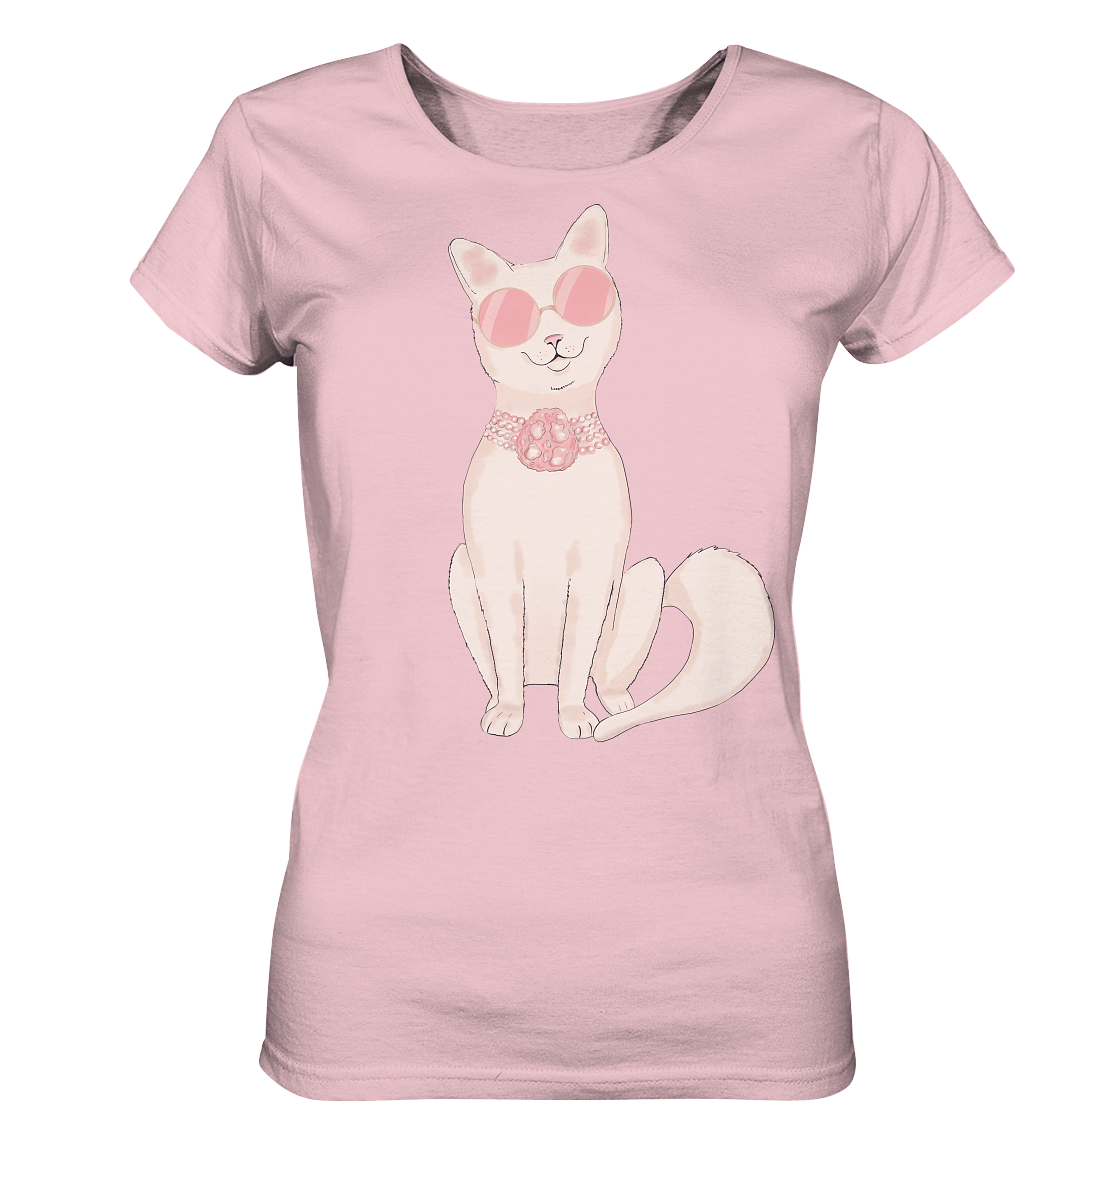 Katze Damen T-Shirt mit Katze in runder Sonnenbrille und Perlen Halskette in rosa Tönen von Bloominic Katzenzeichnung